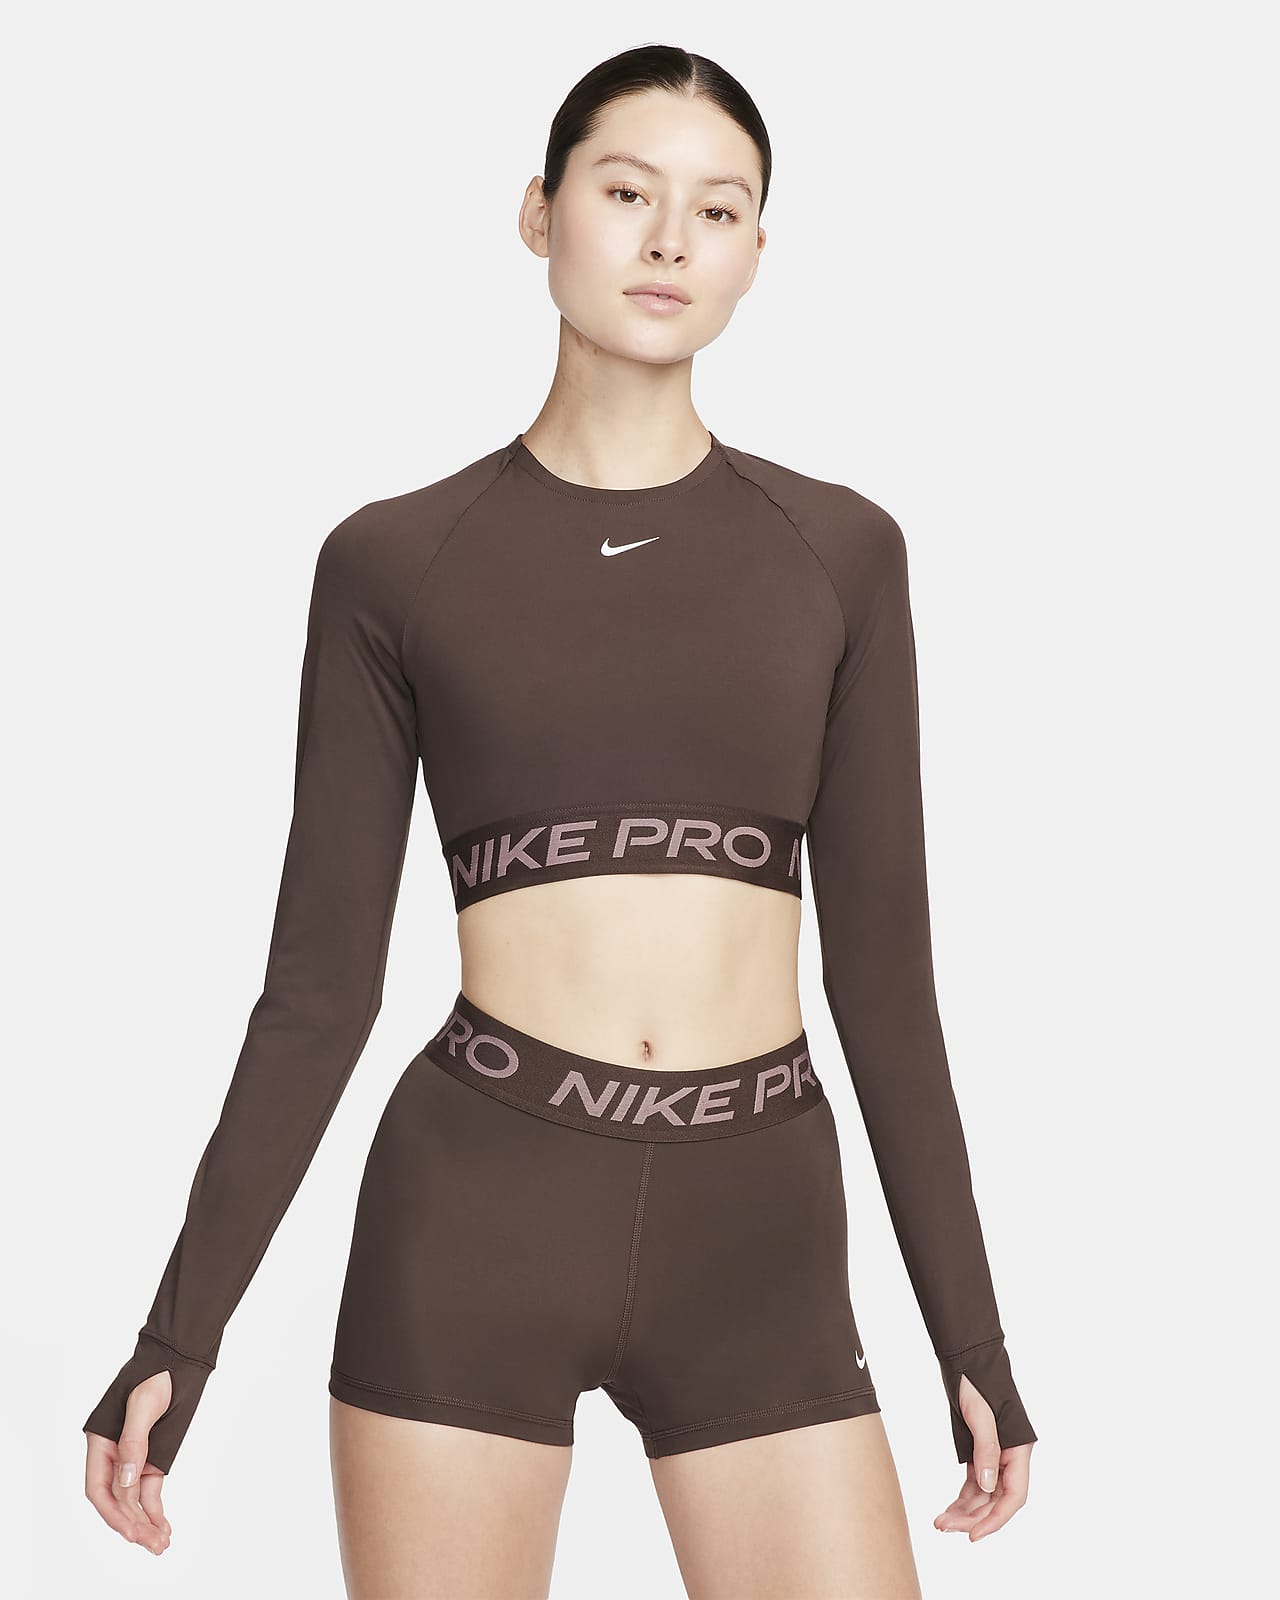 Dámské zkrácené tričko Nike Pro Dri-FIT s dlouhým rukávem